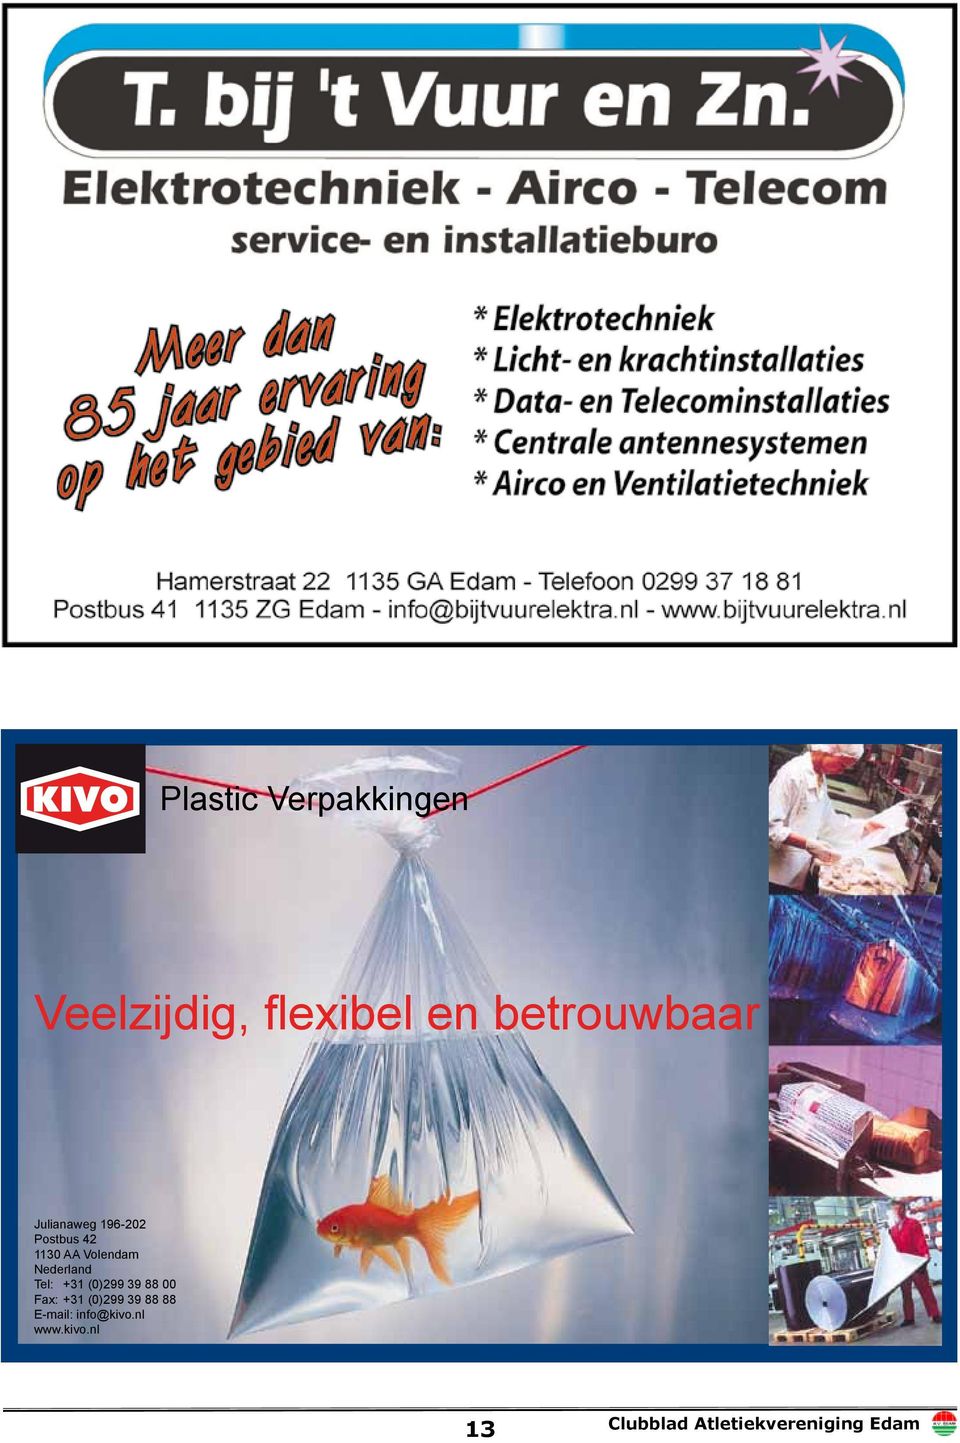 Volendam Nederland Tel: +31 (0)299 39 88 00 Fax: